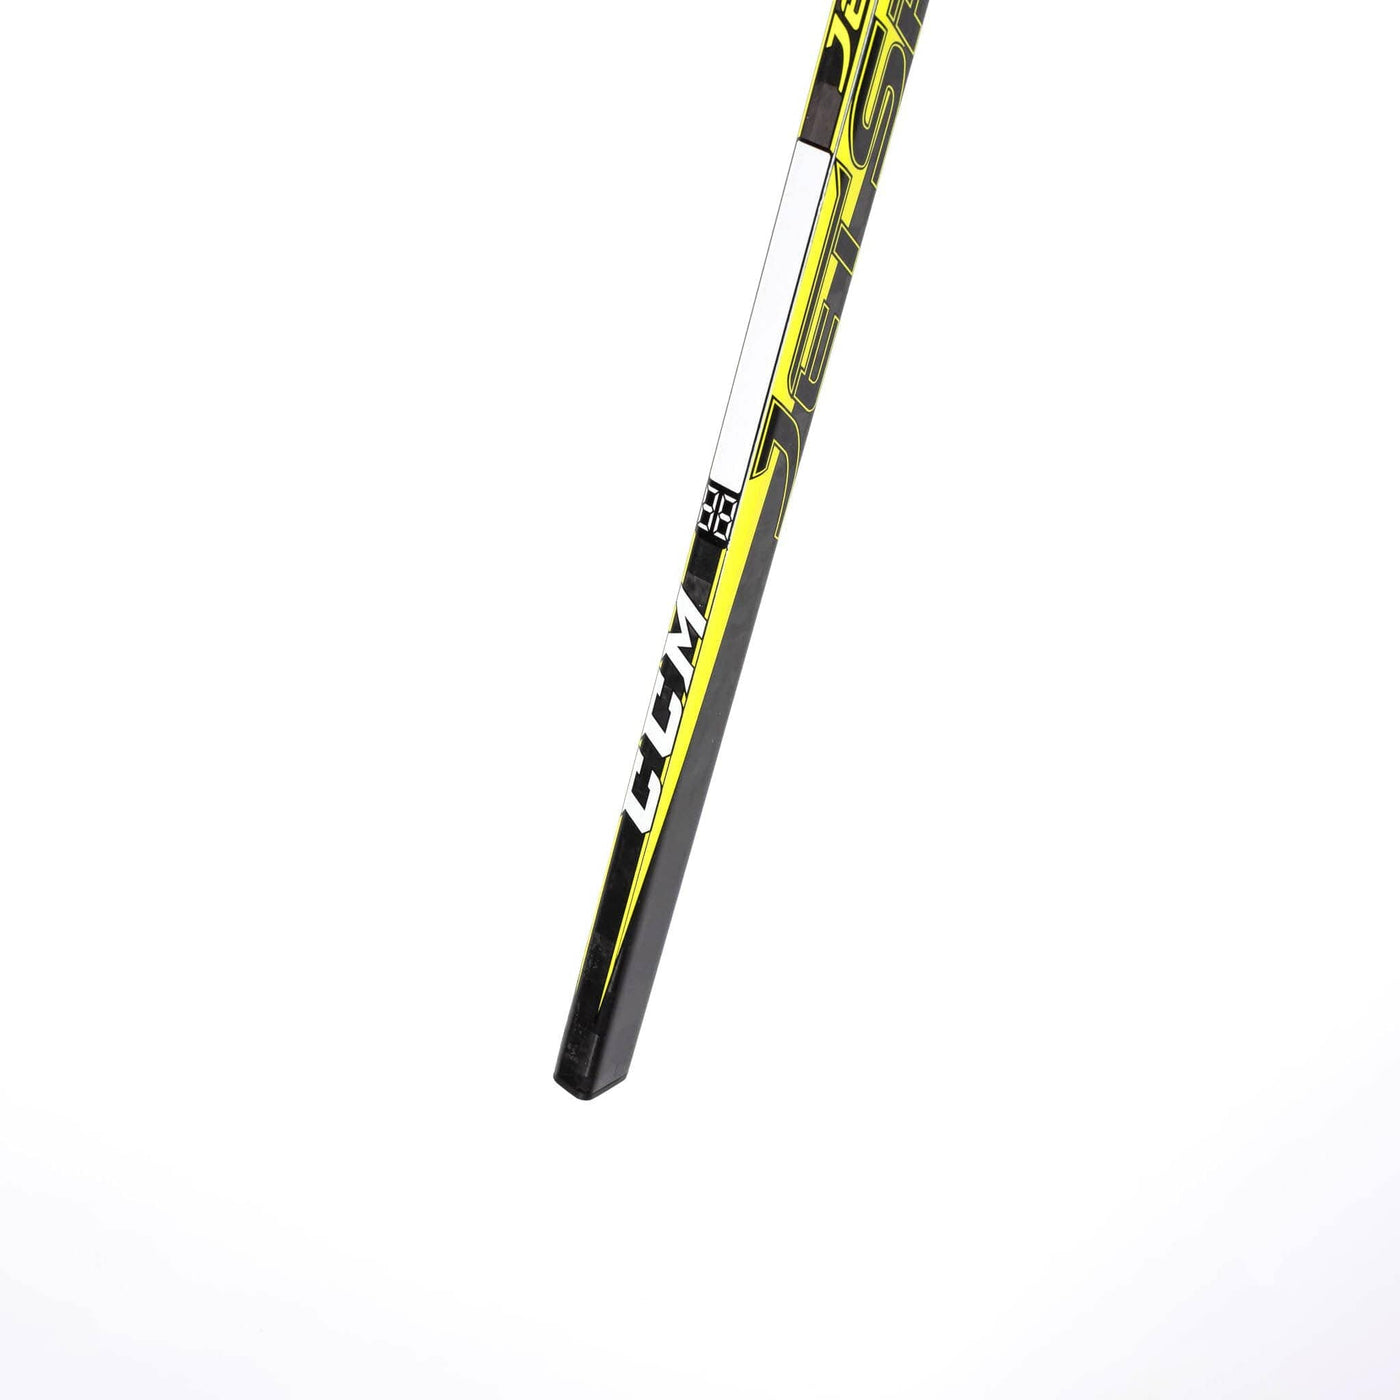 CCM Jetspeed Youth Hockey Stick - 10 Flex